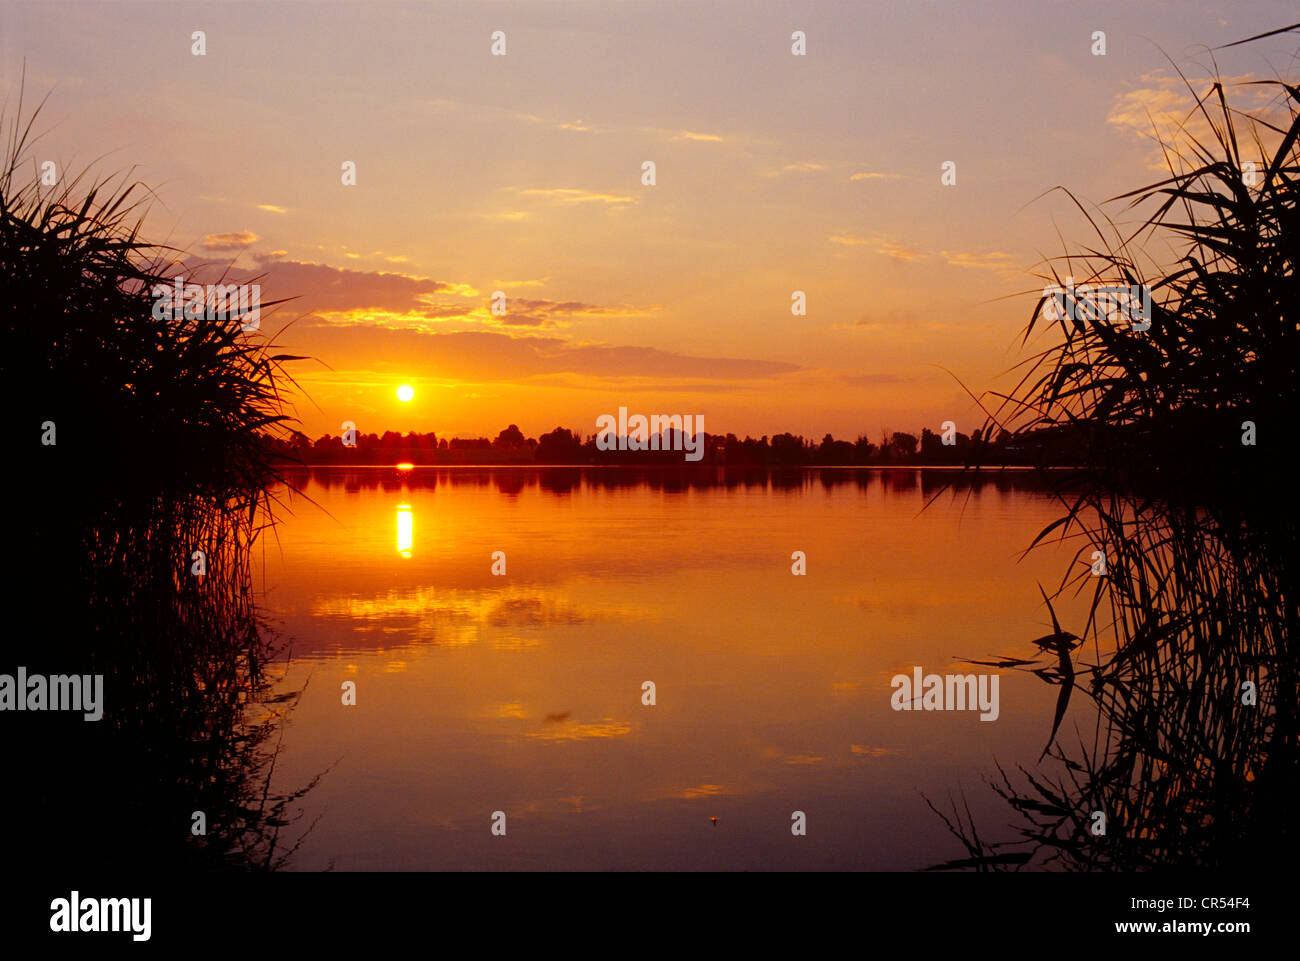 Sunset over the masurian lake Kolmowo in Poland. Sonnenuntergang über dem Kolmowo See in Masuren. Stock Photo